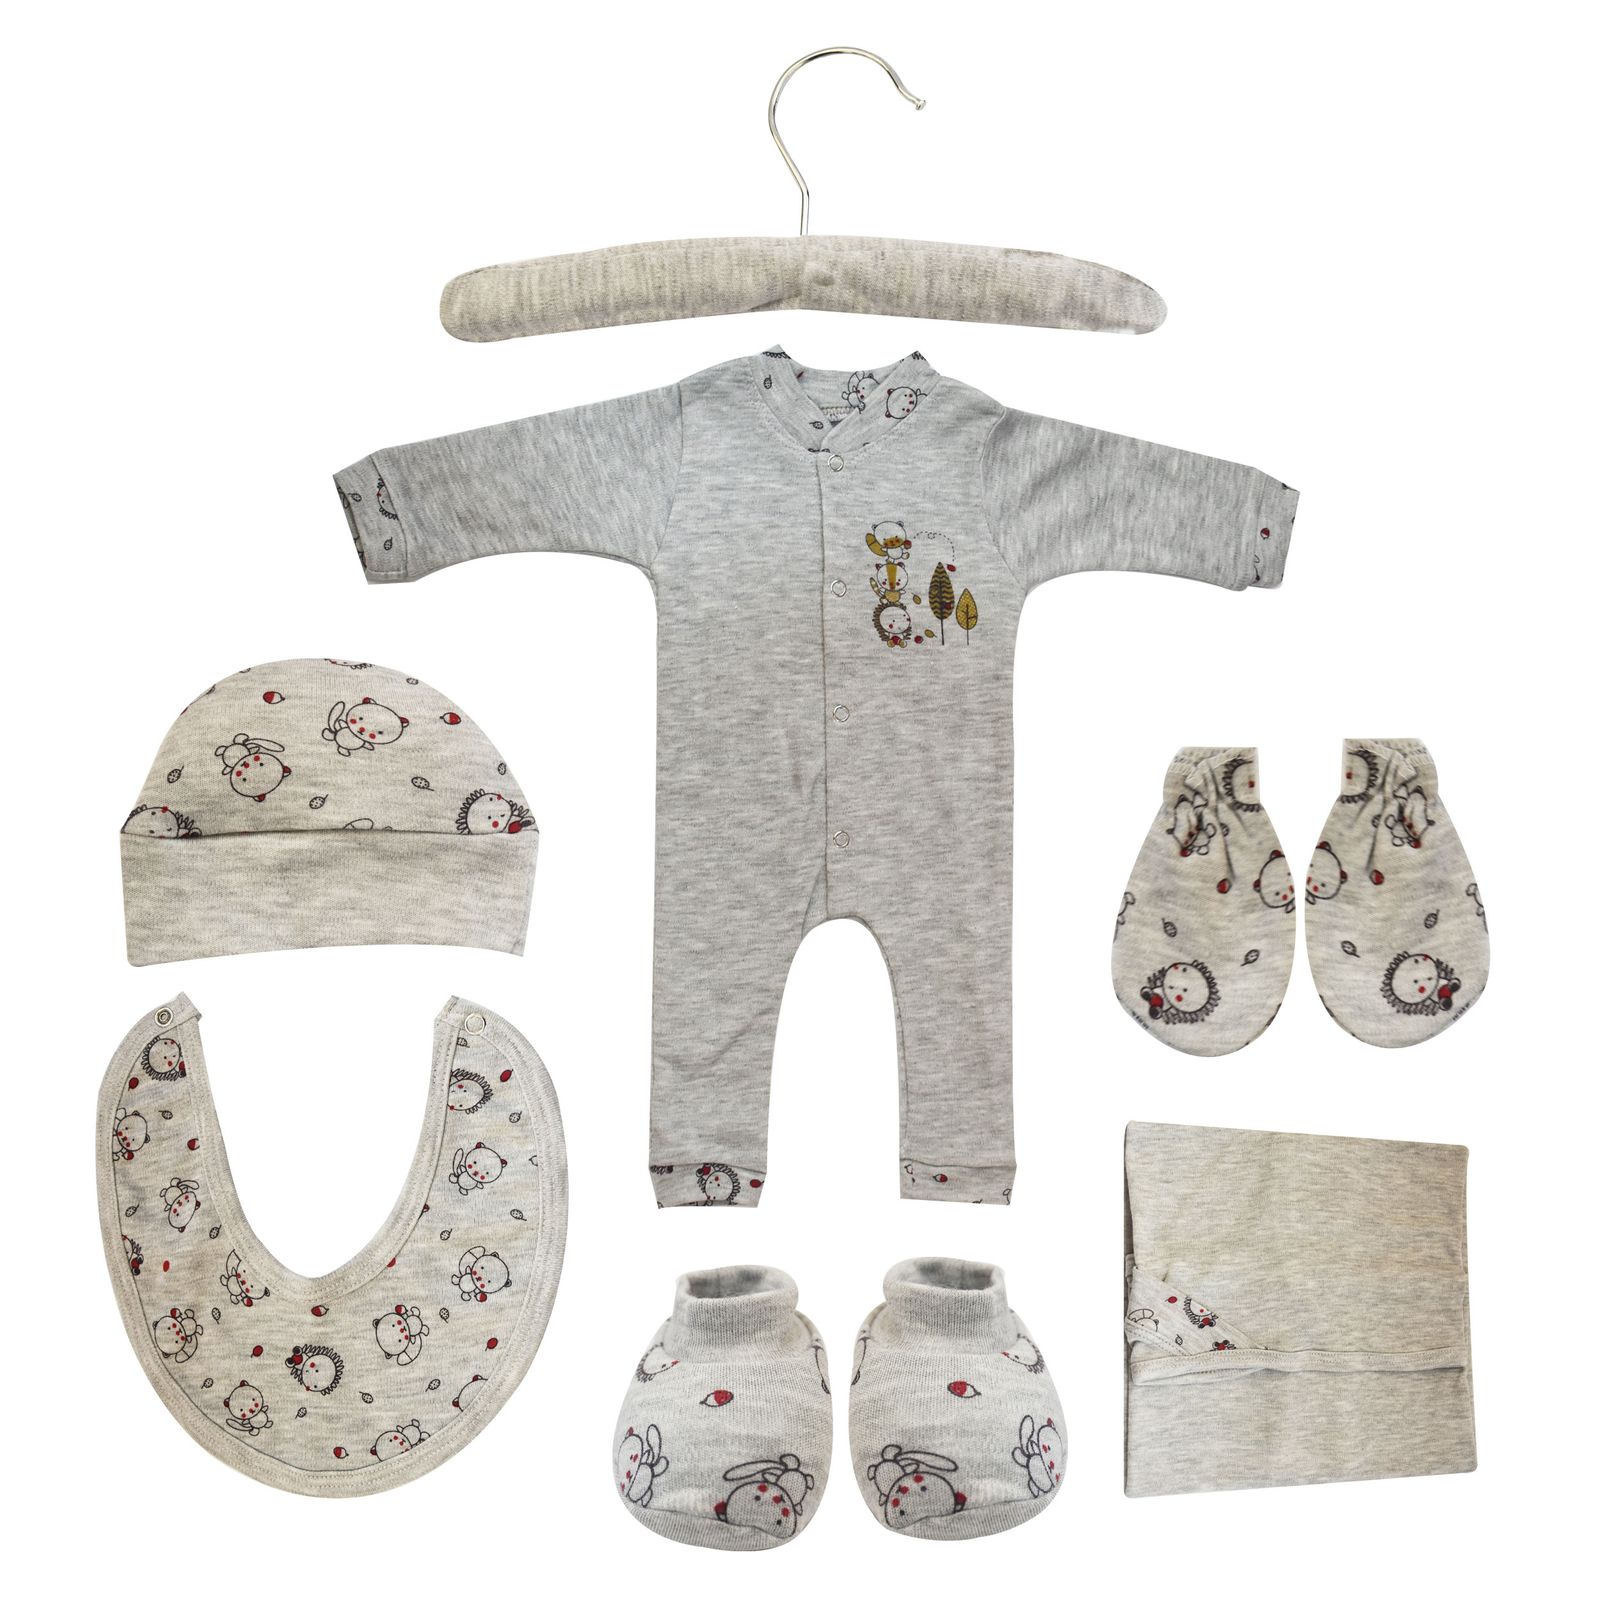 ست 7 تکه لباس نوزادی مادرکر طرح راکون کد M454.3 -  - 9